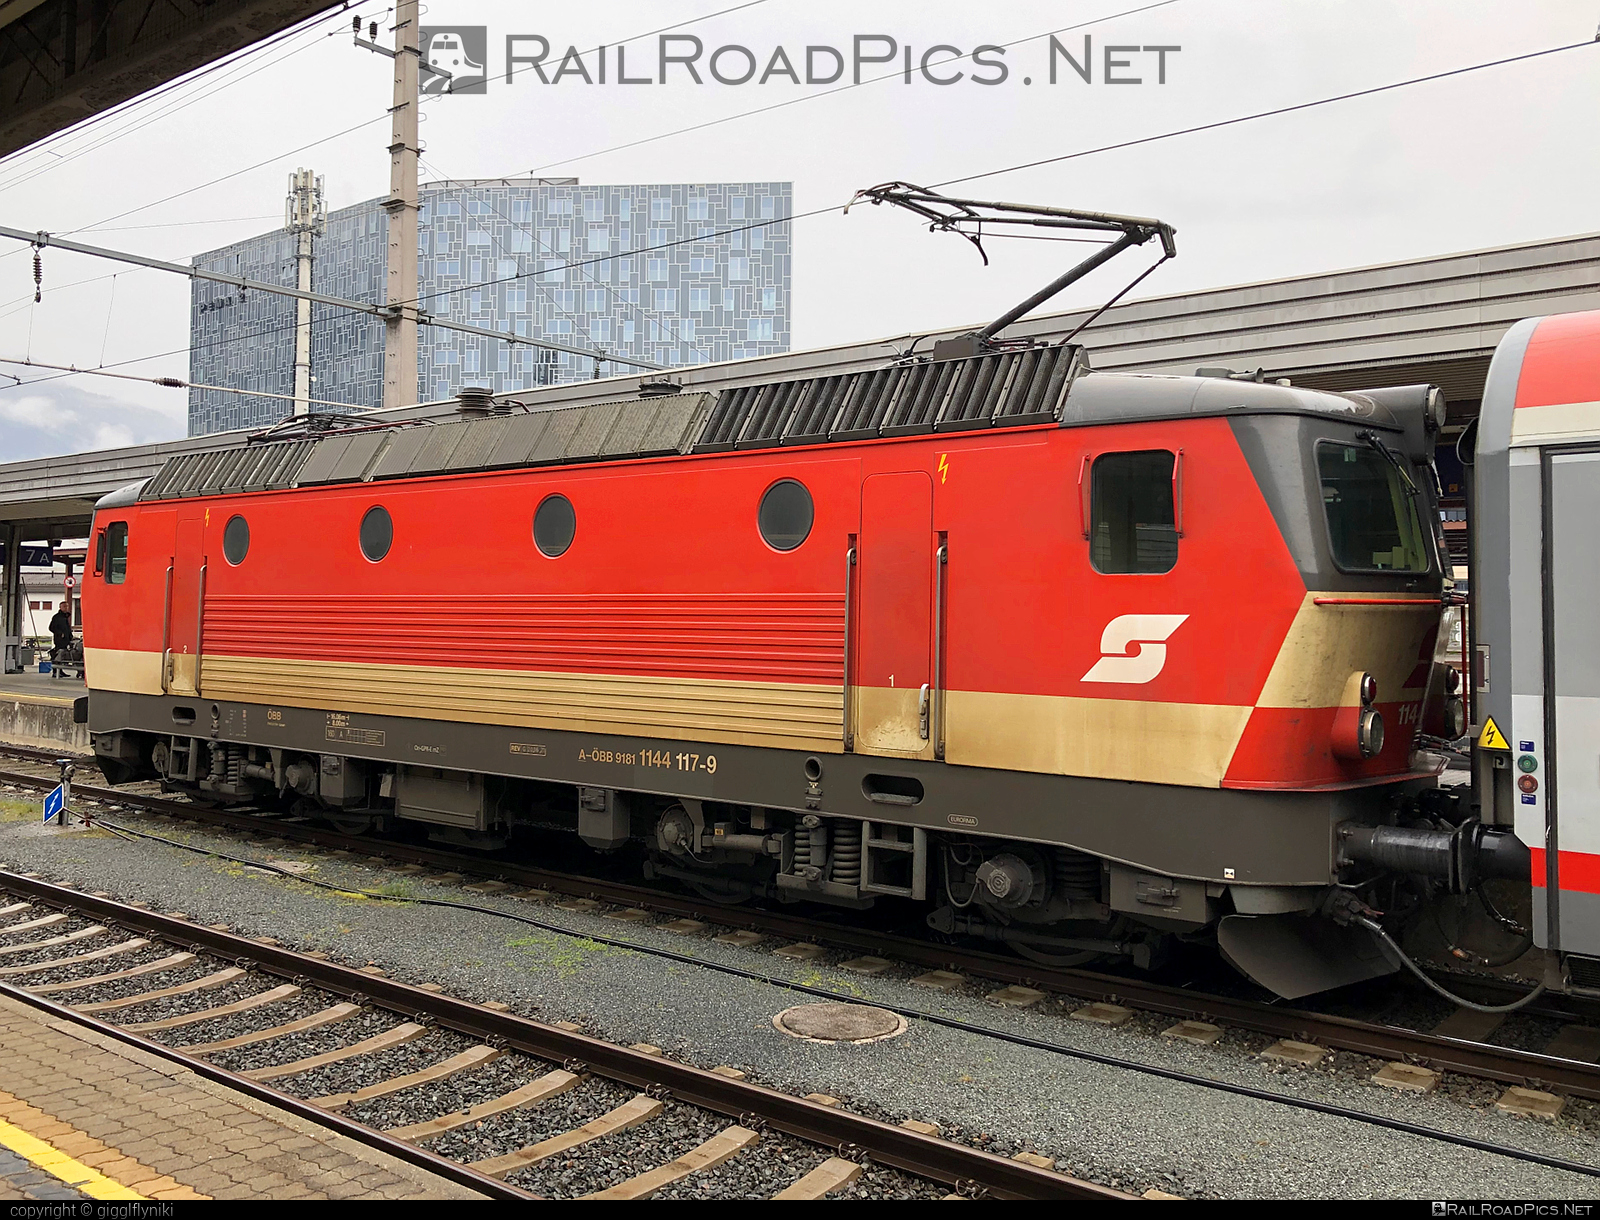 SGP 1144 - 1144 117 operated by Österreichische Bundesbahnen #obb #obb1144 #obbClass1144 #osterreichischebundesbahnen #sgp #sgp1144 #simmeringgrazpauker